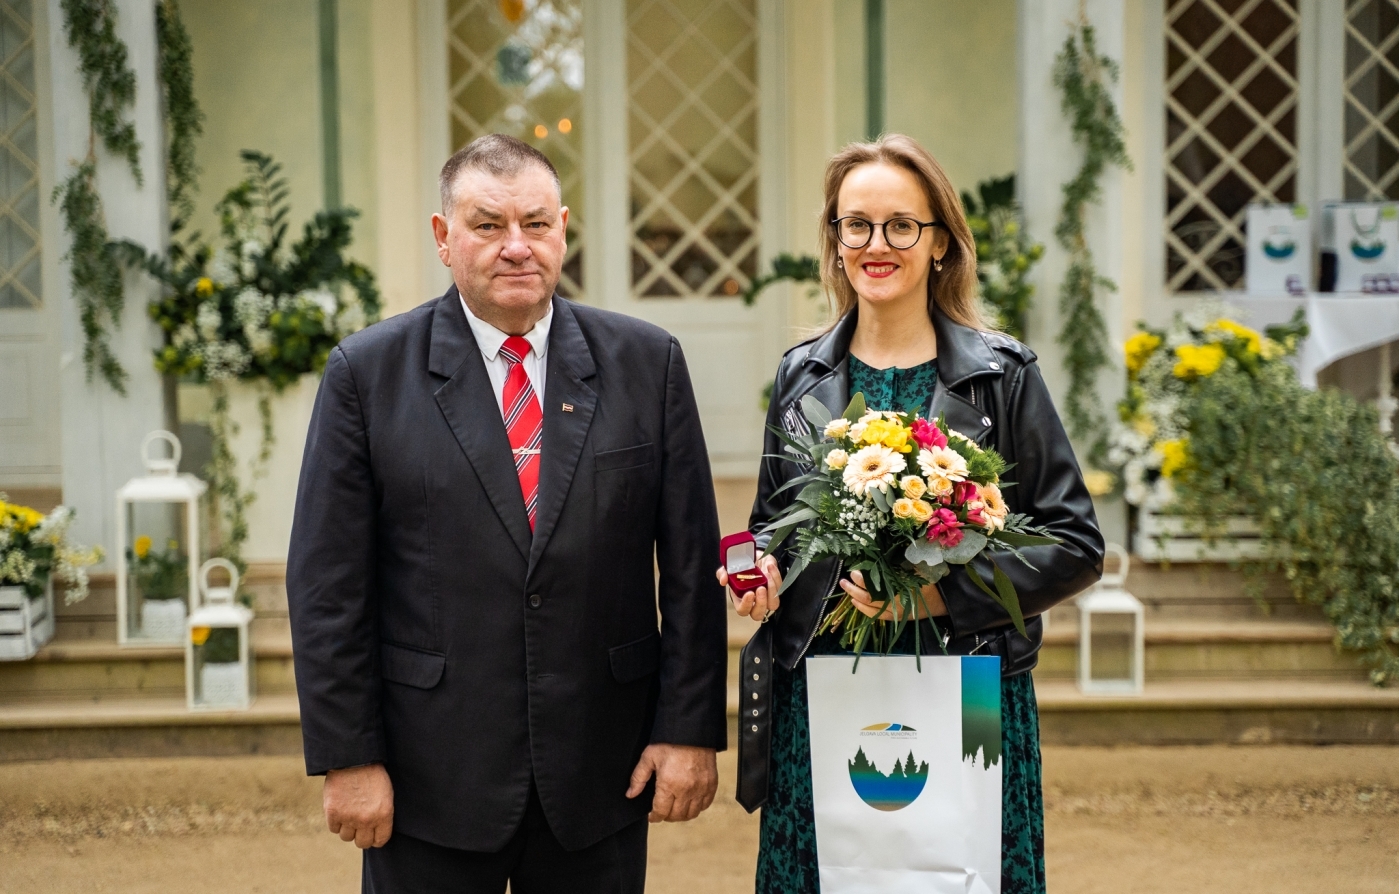 Godināti Jelgavas novada pašvaldības augstāko apbalvojumu saņēmēji